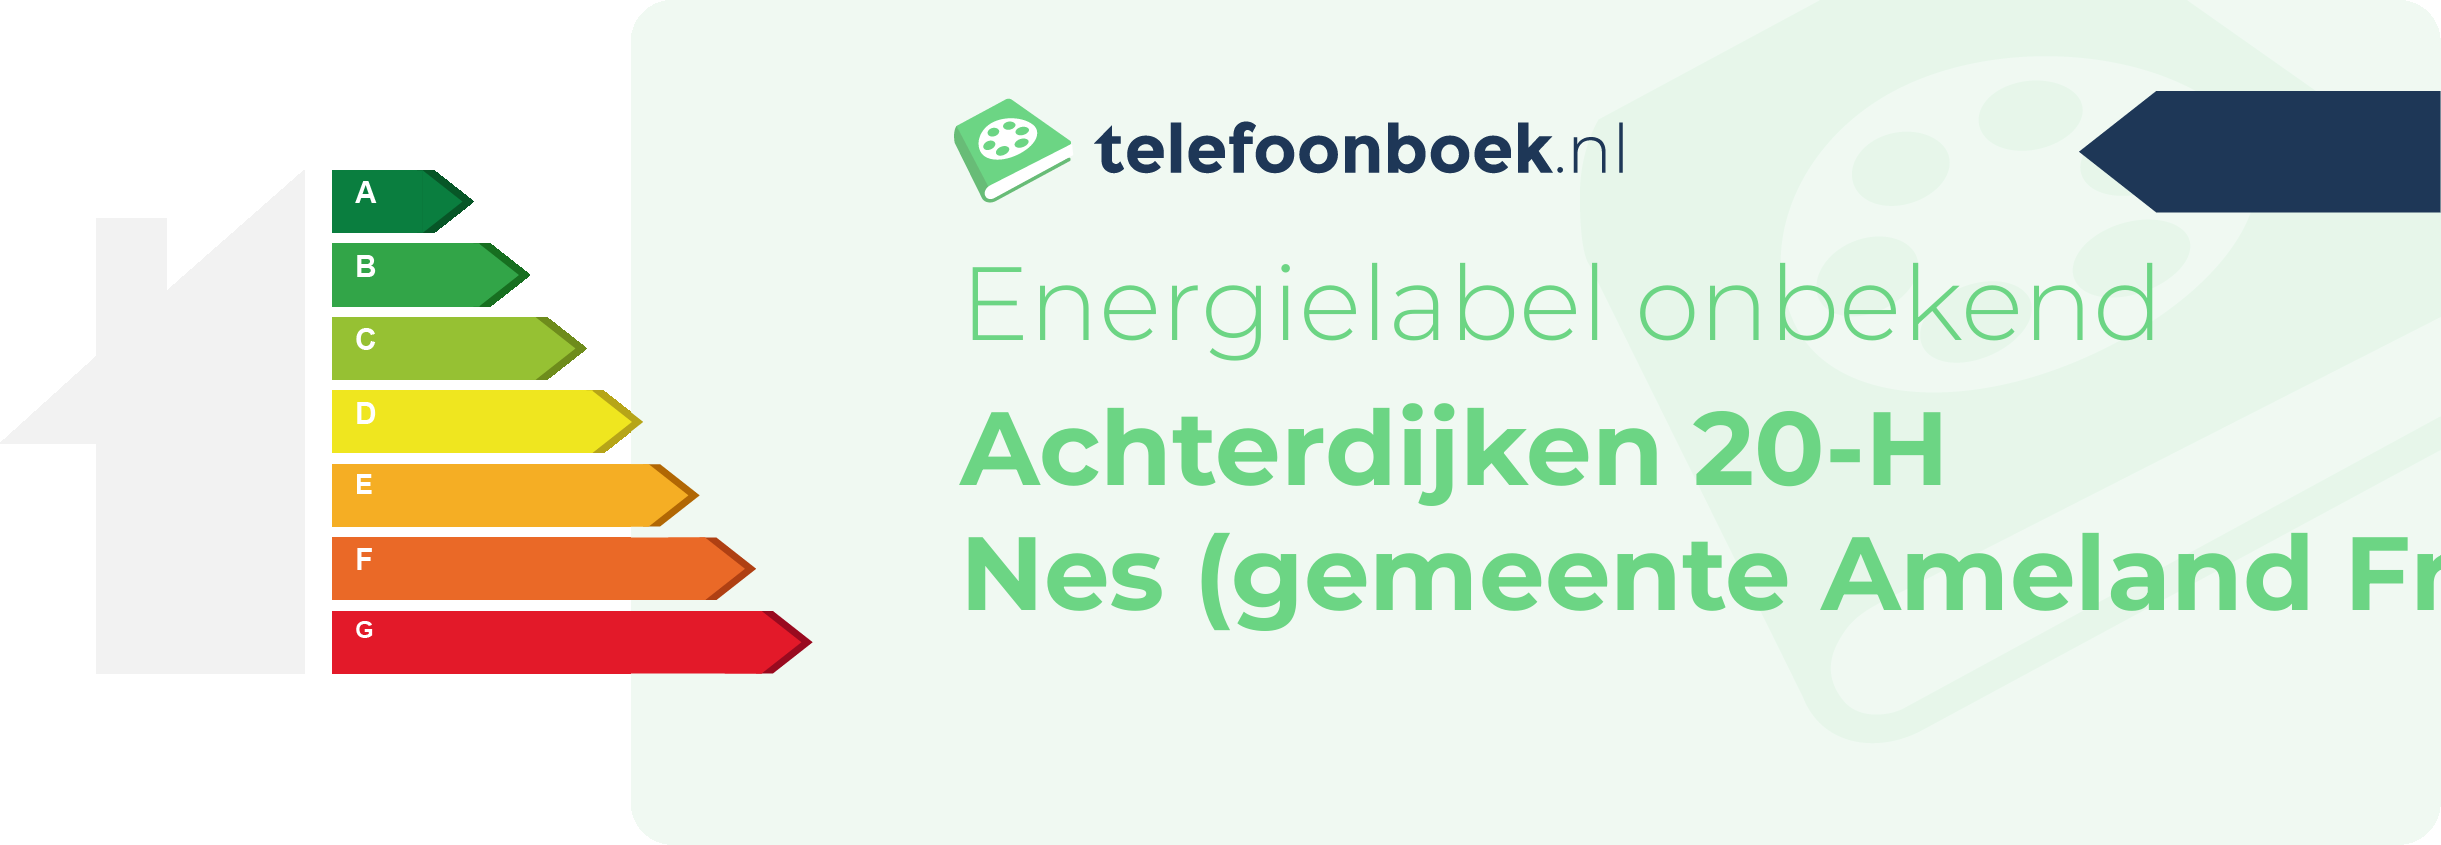 Energielabel Achterdijken 20-H Nes (gemeente Ameland Friesland)